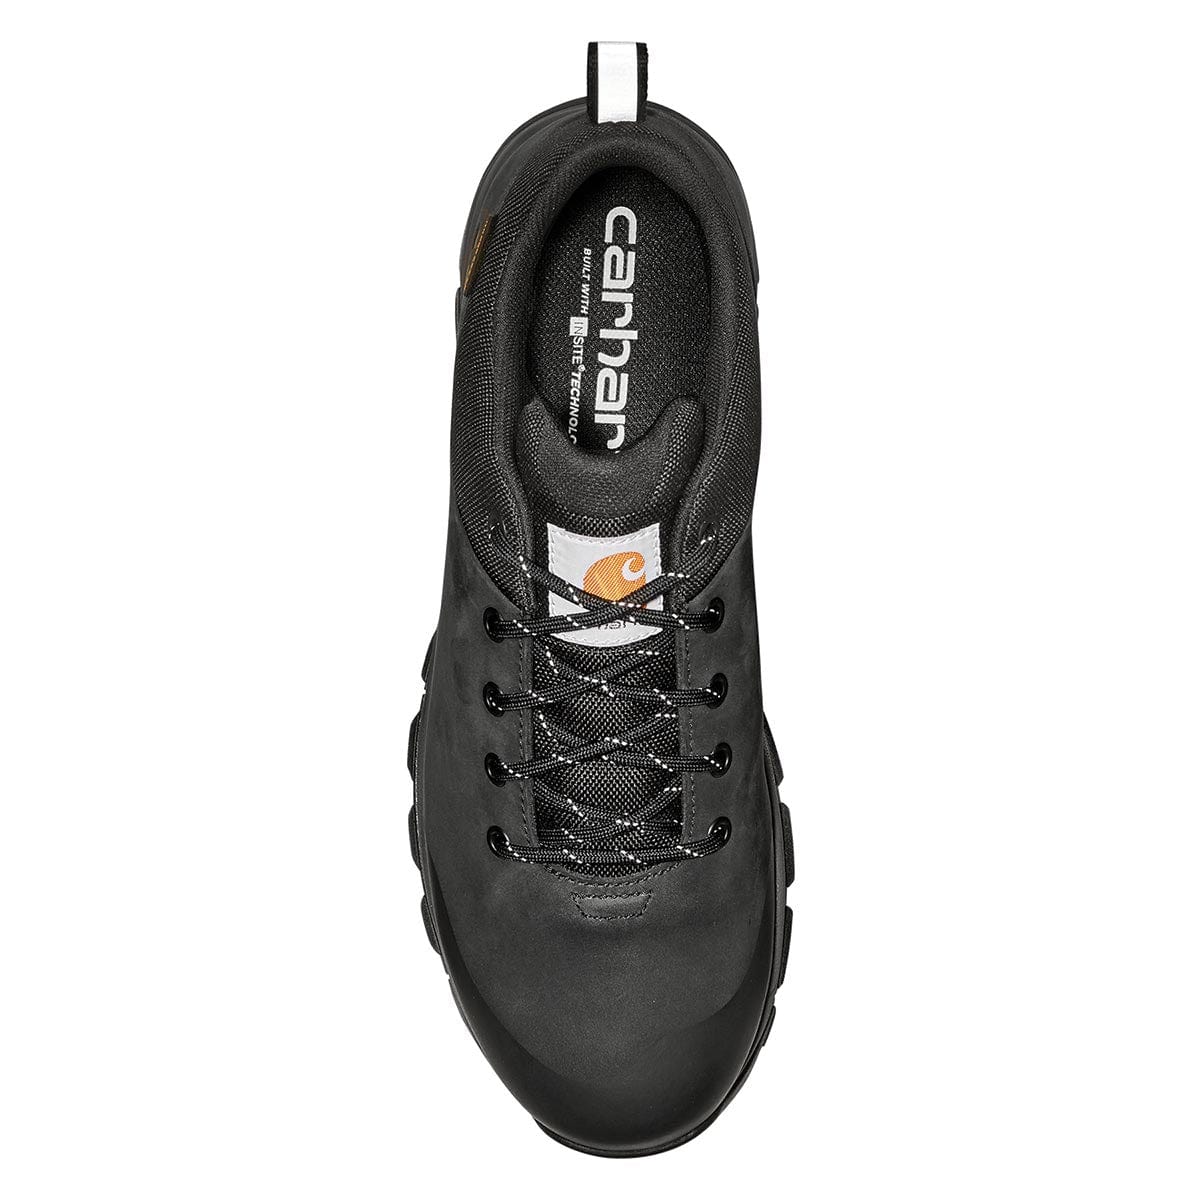 Carhartt Men's Waterproof Low Alloy Safety Toe Hiker Shoes - Black